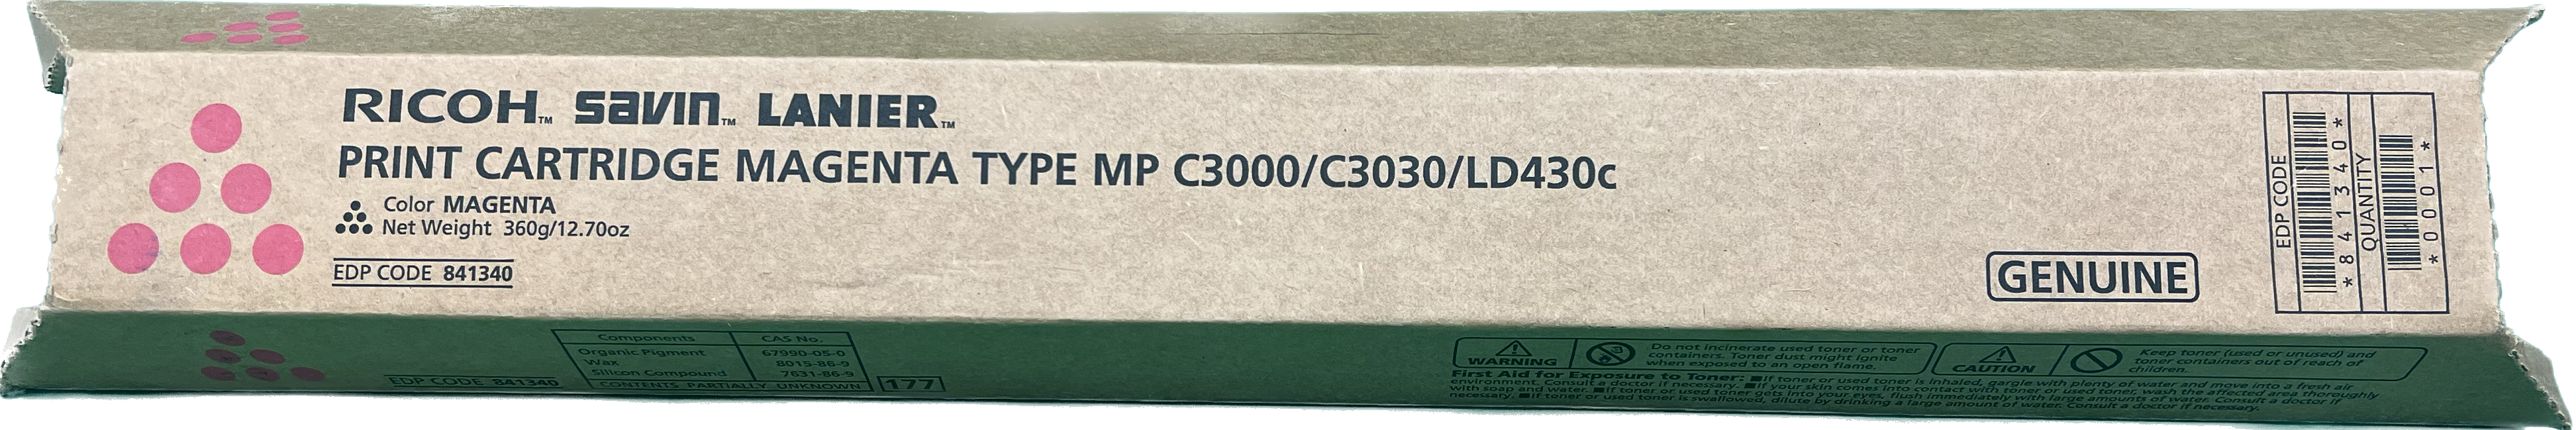 Genuine Ricoh Magenta Toner Cartridge | 841340 | MP C3000/C3030/LD430C